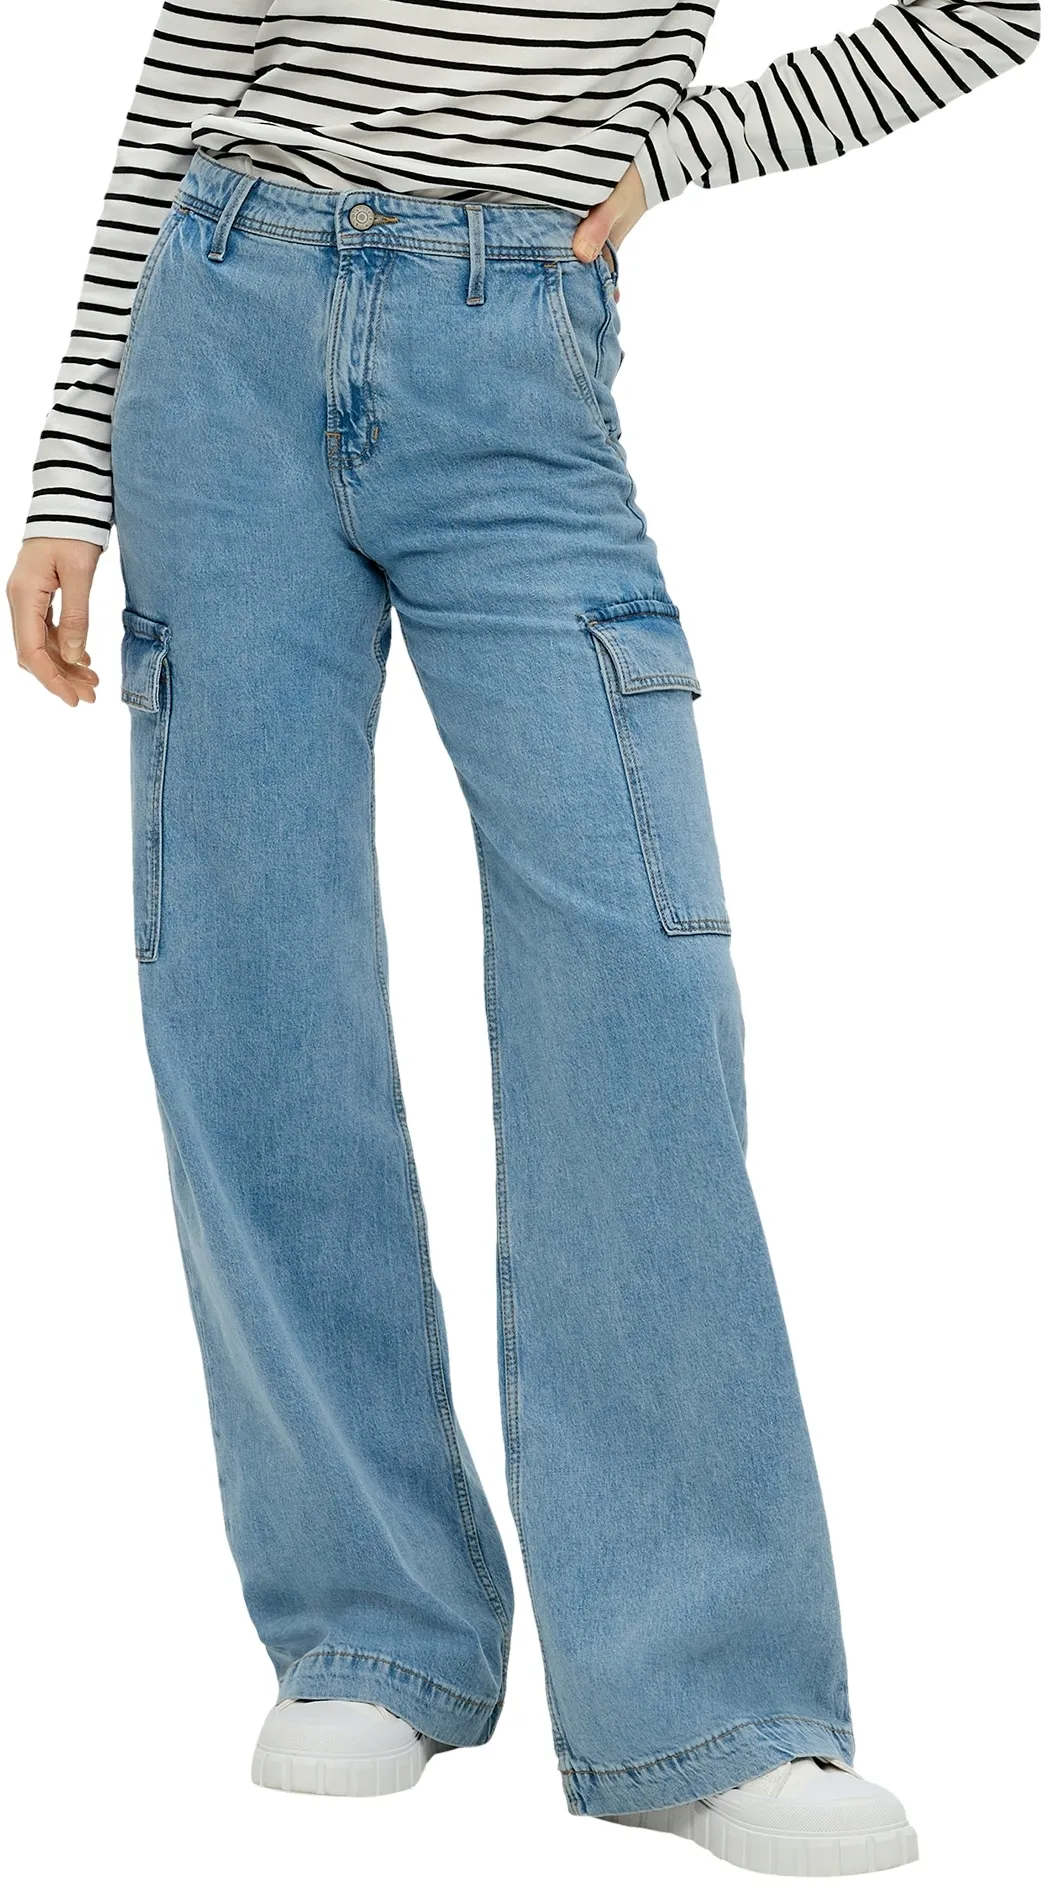 Weite Jeans S.OLIVER Gr. 40, Länge 30, blau (mid blue) Damen Jeans Weite mit weitem Bein und hohem Bund